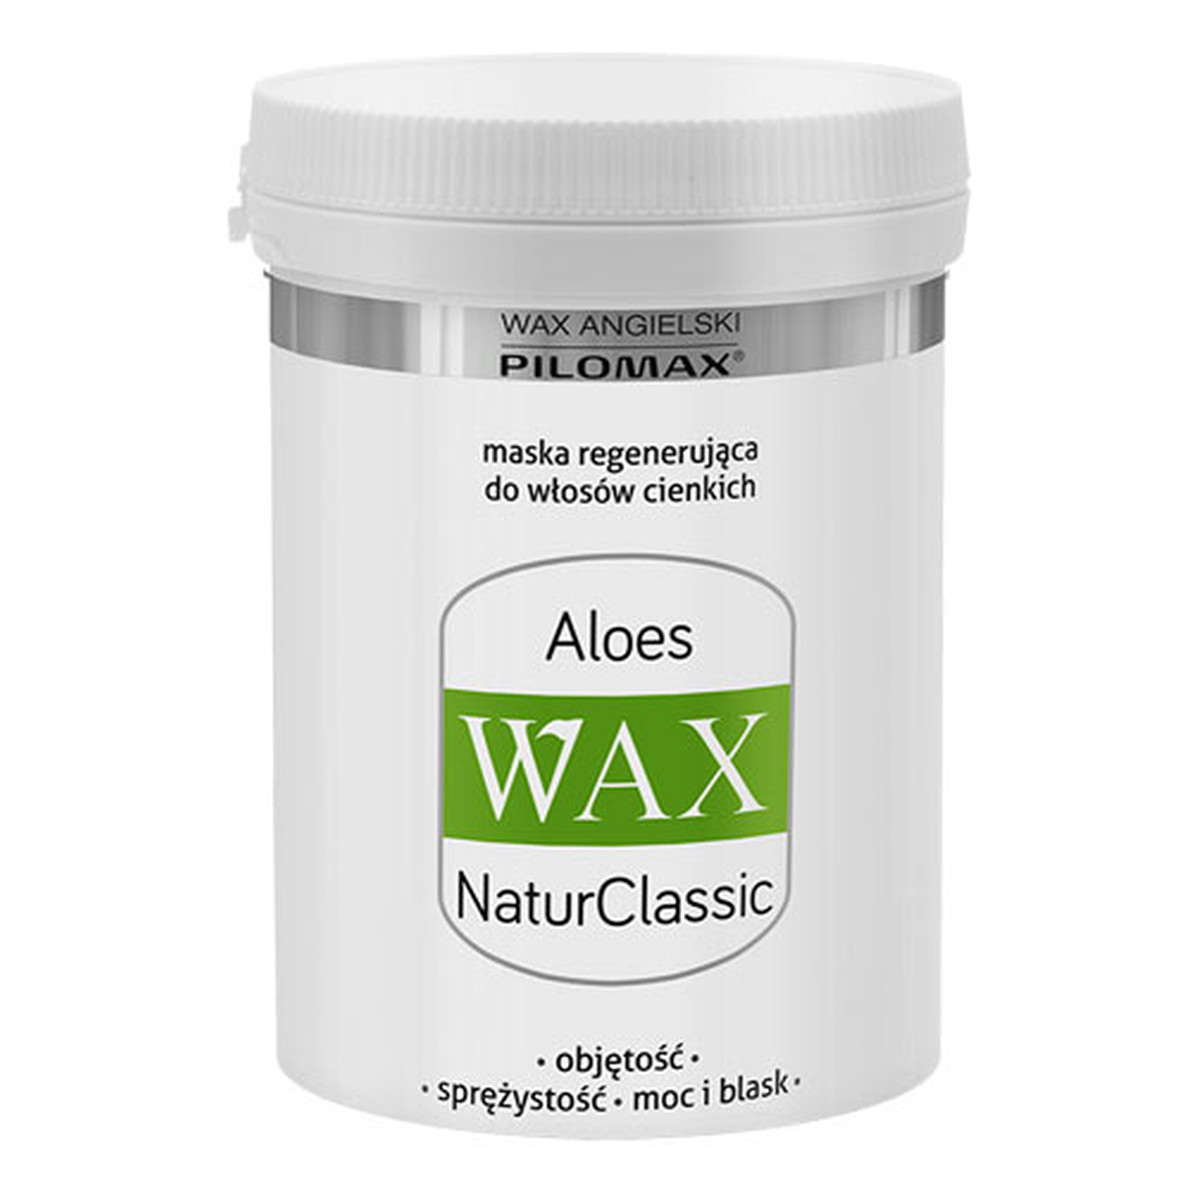 Pilomax Wax Aloes Natur Classic Maska Regenerująca Do Włosów Cienkich 480ml